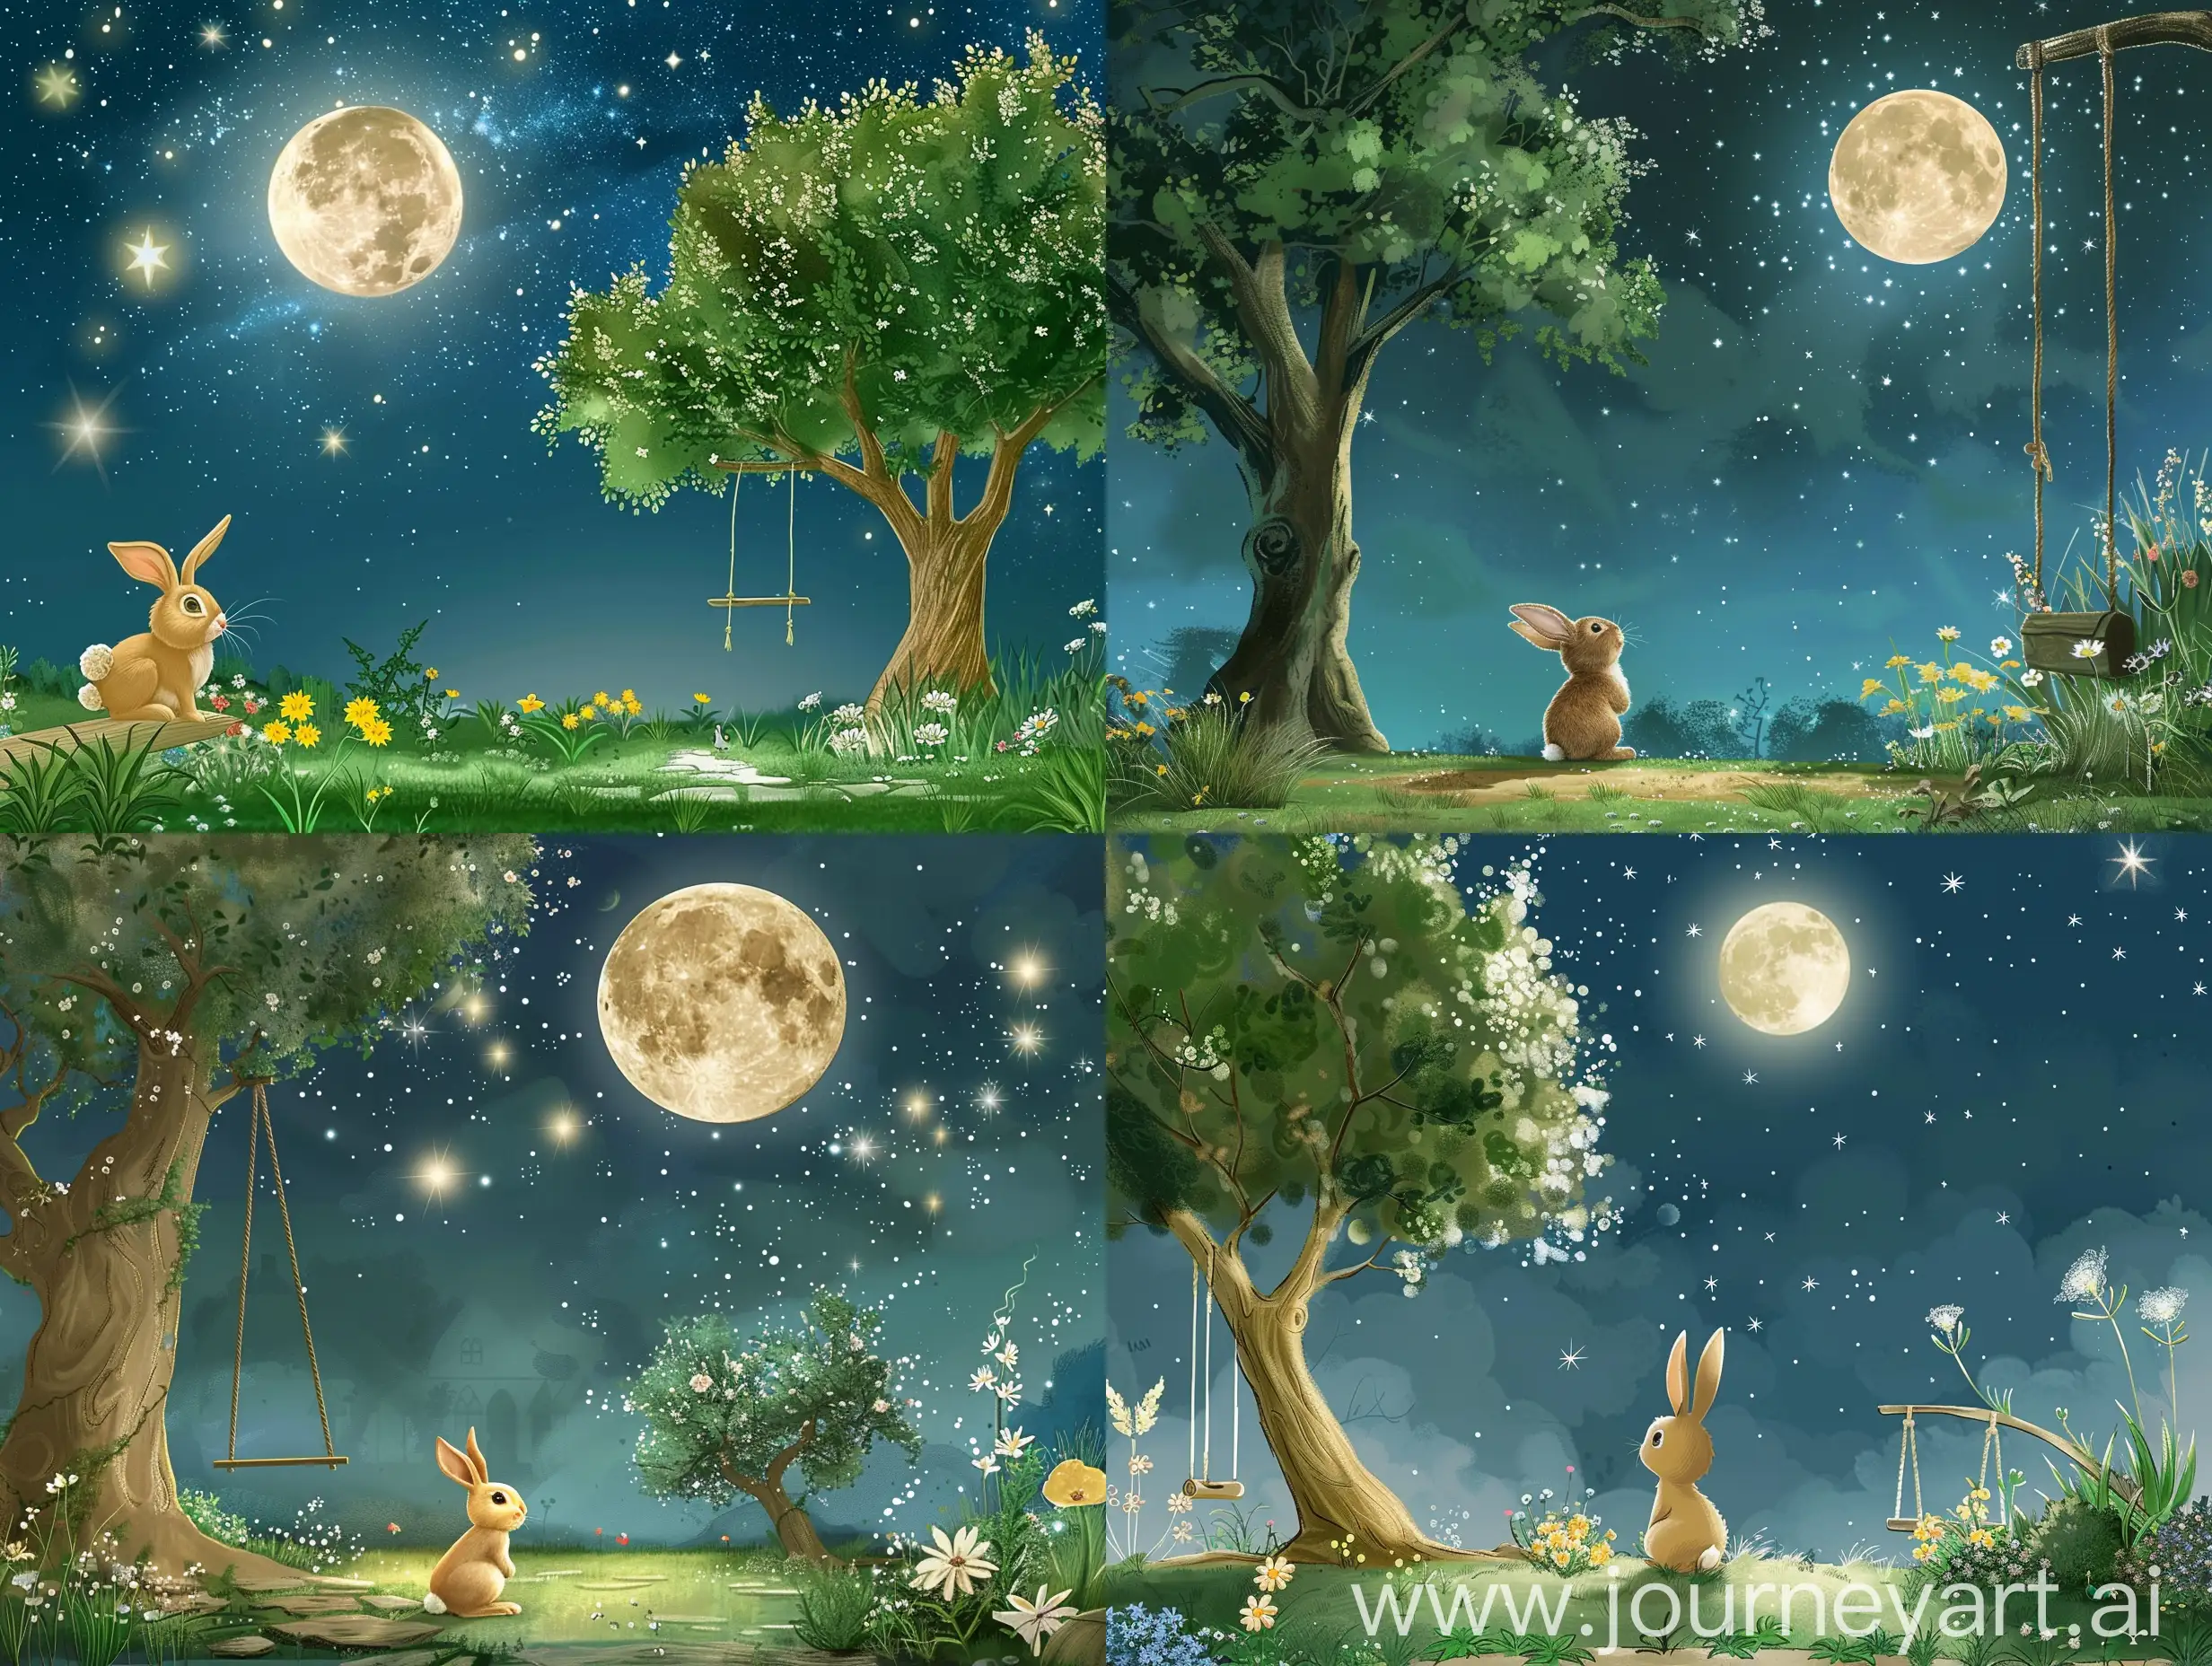 一个宁静的夜晚，小兔子杰米在他的后院里仰望星空，月亮圆圆的，星星闪烁。后院里有一棵大树，一个秋千，以及一些花草。